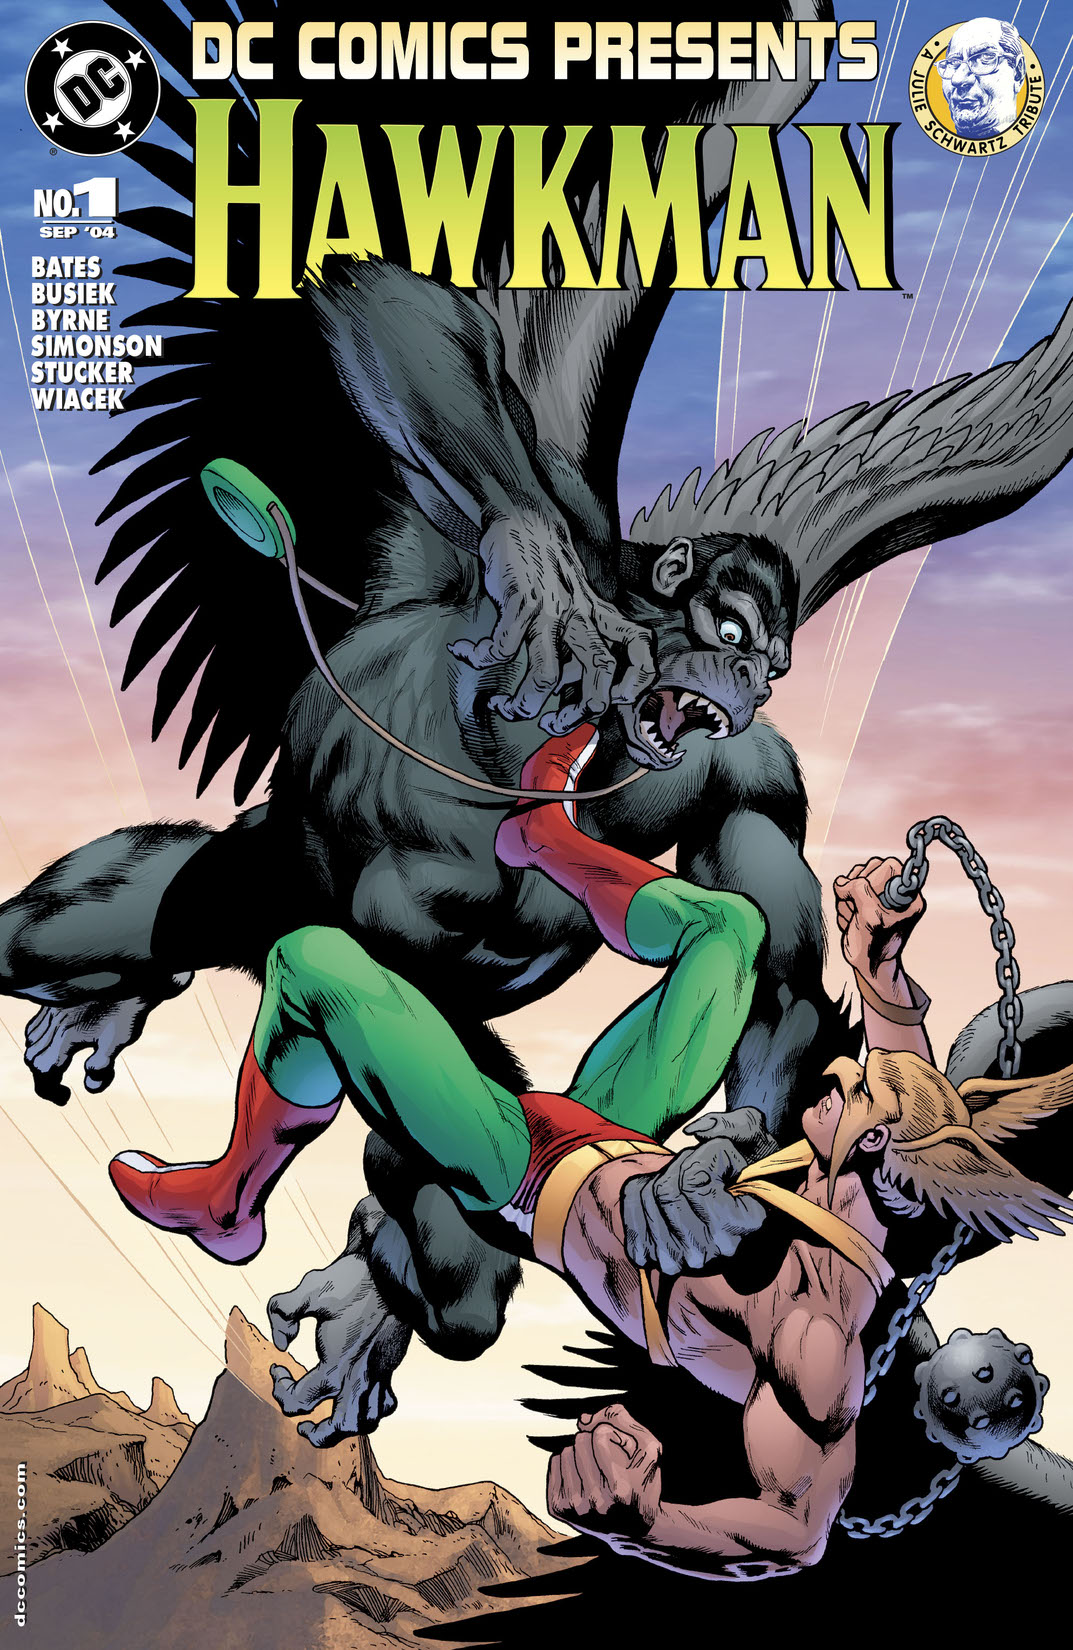 DC Comics Presents: Hawkman (2004-) #1 preview images